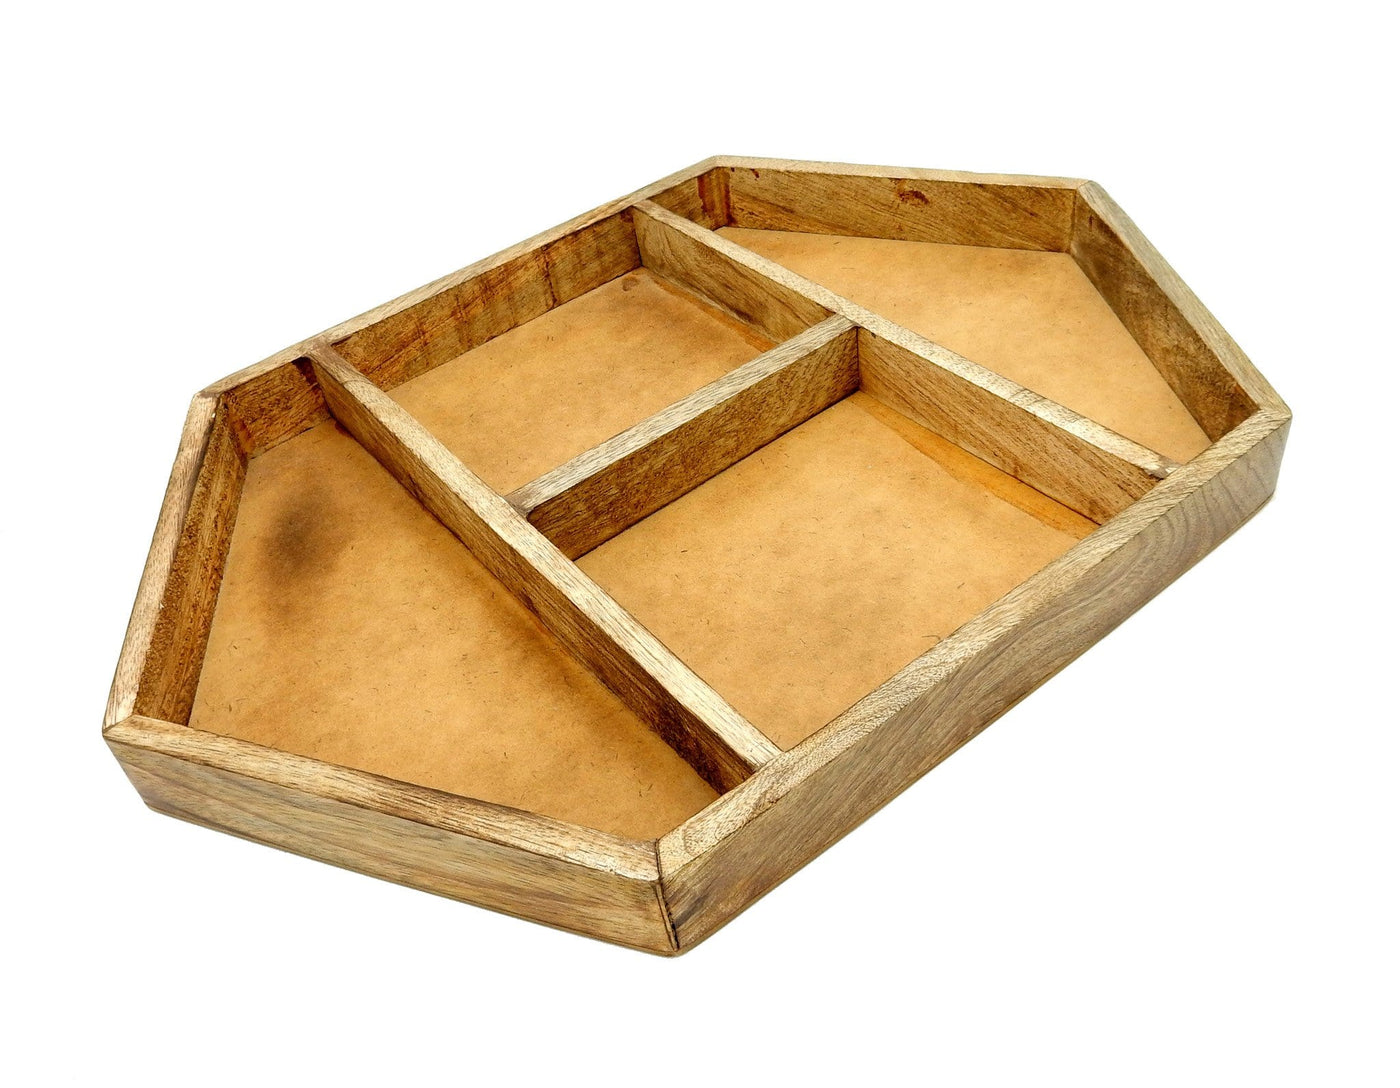 wood tray on white background